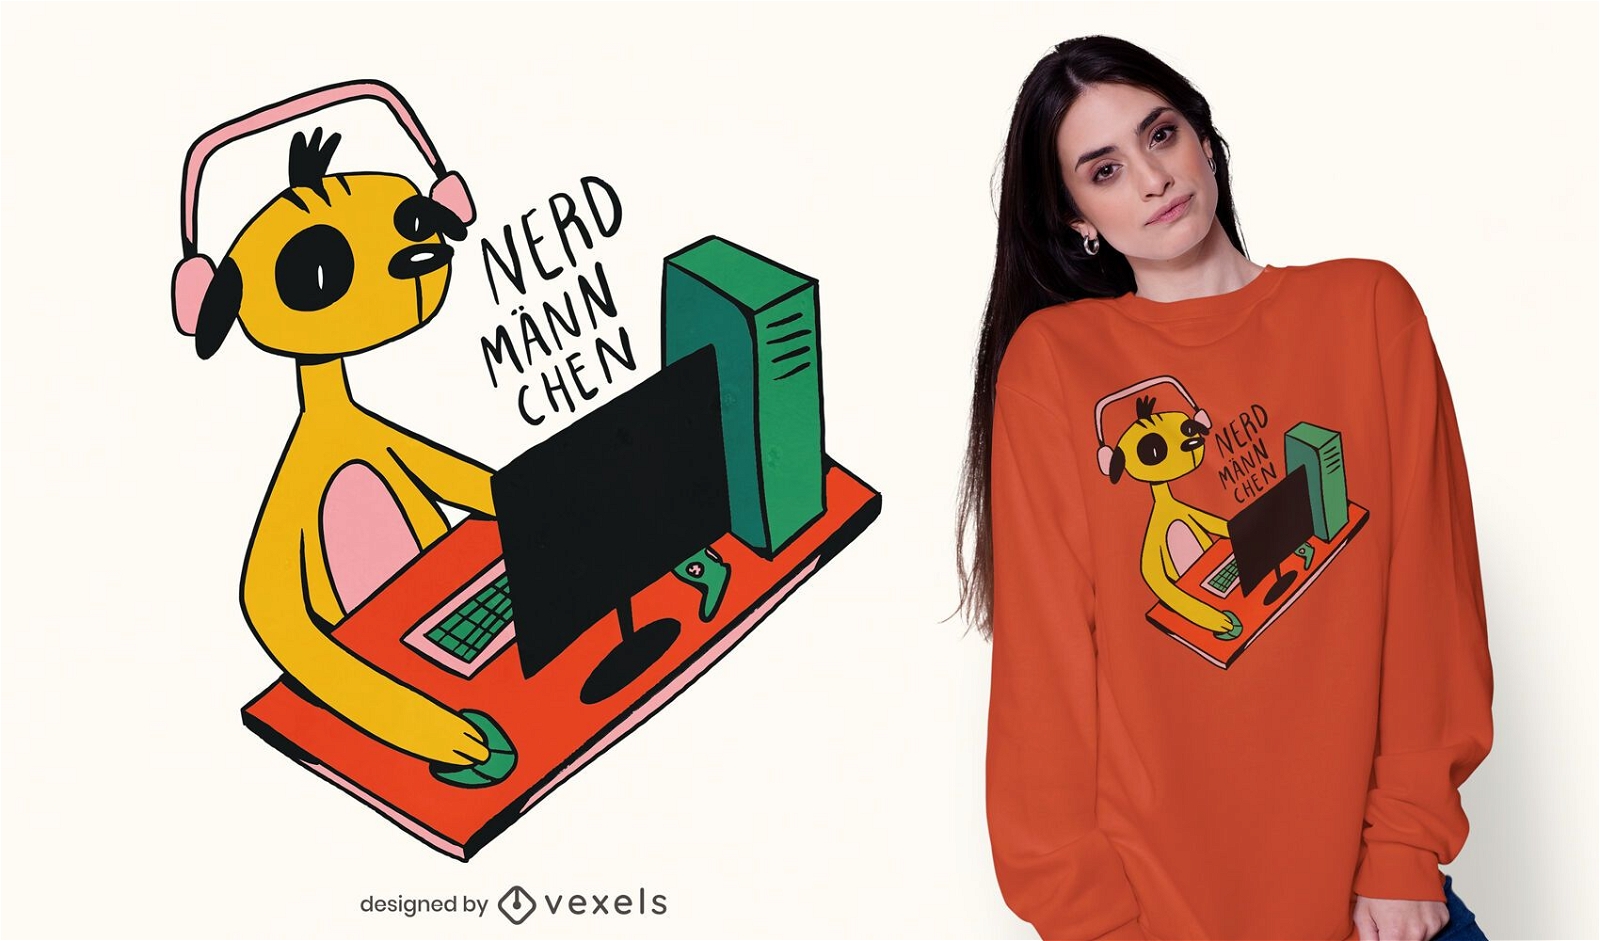 Meerkat gaming t-shirt design